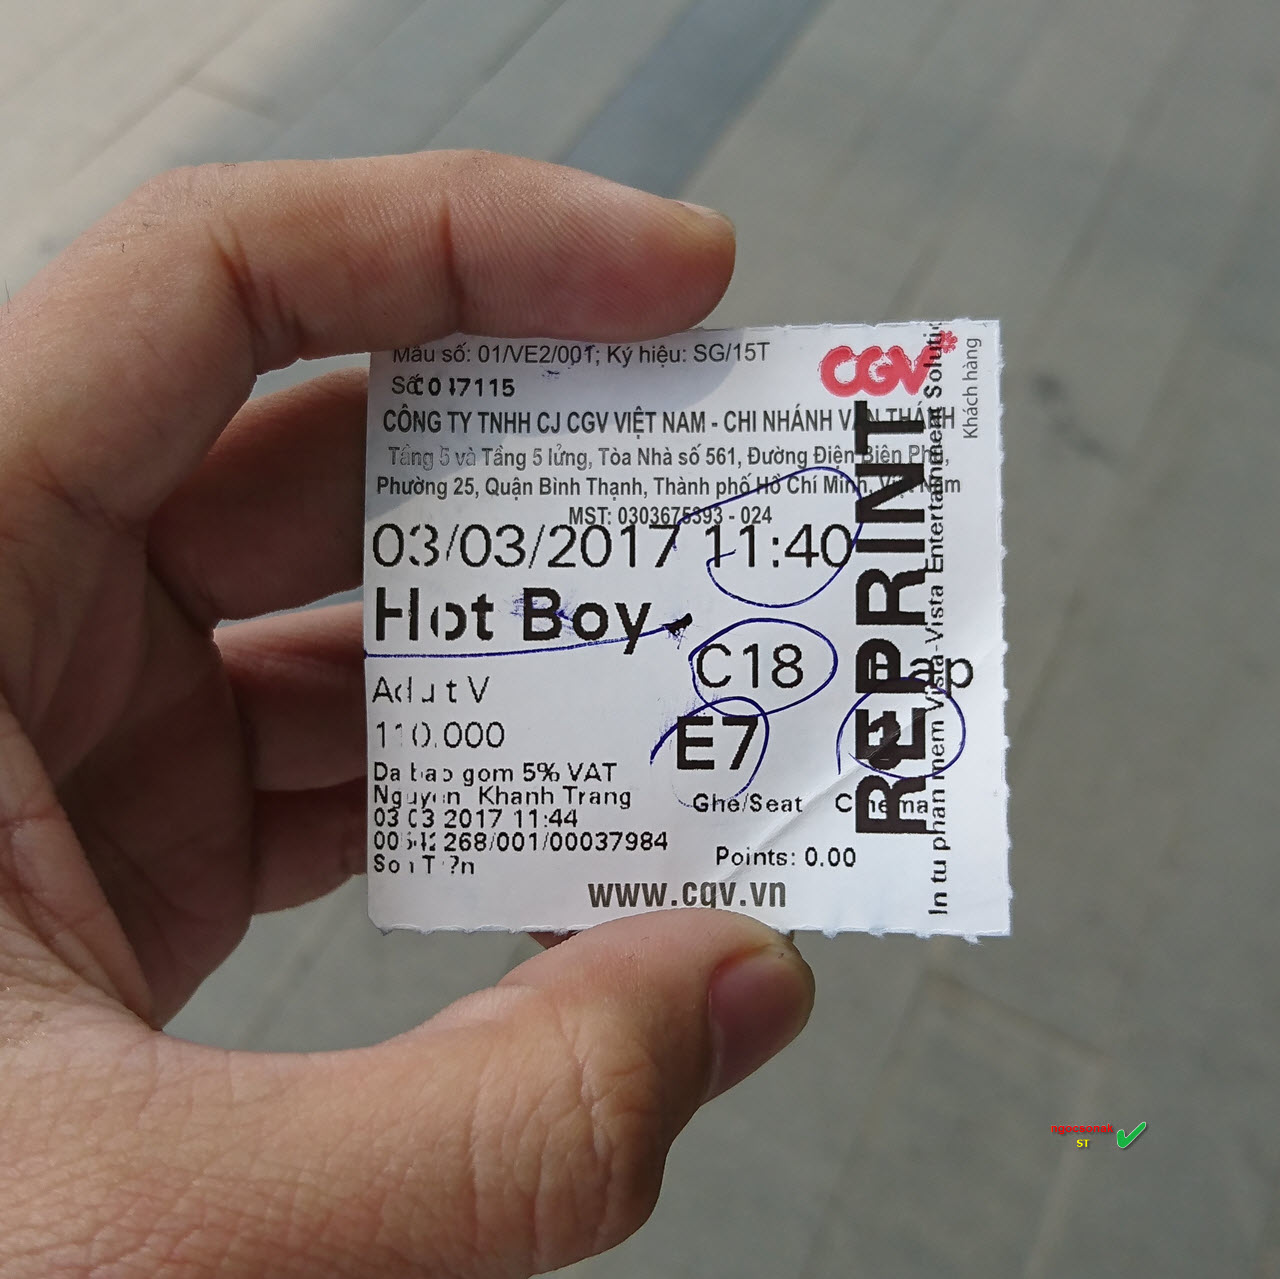 Review phim Hotboy nổi loạn 2: ít mộng mơ hơn, chân thật hơn